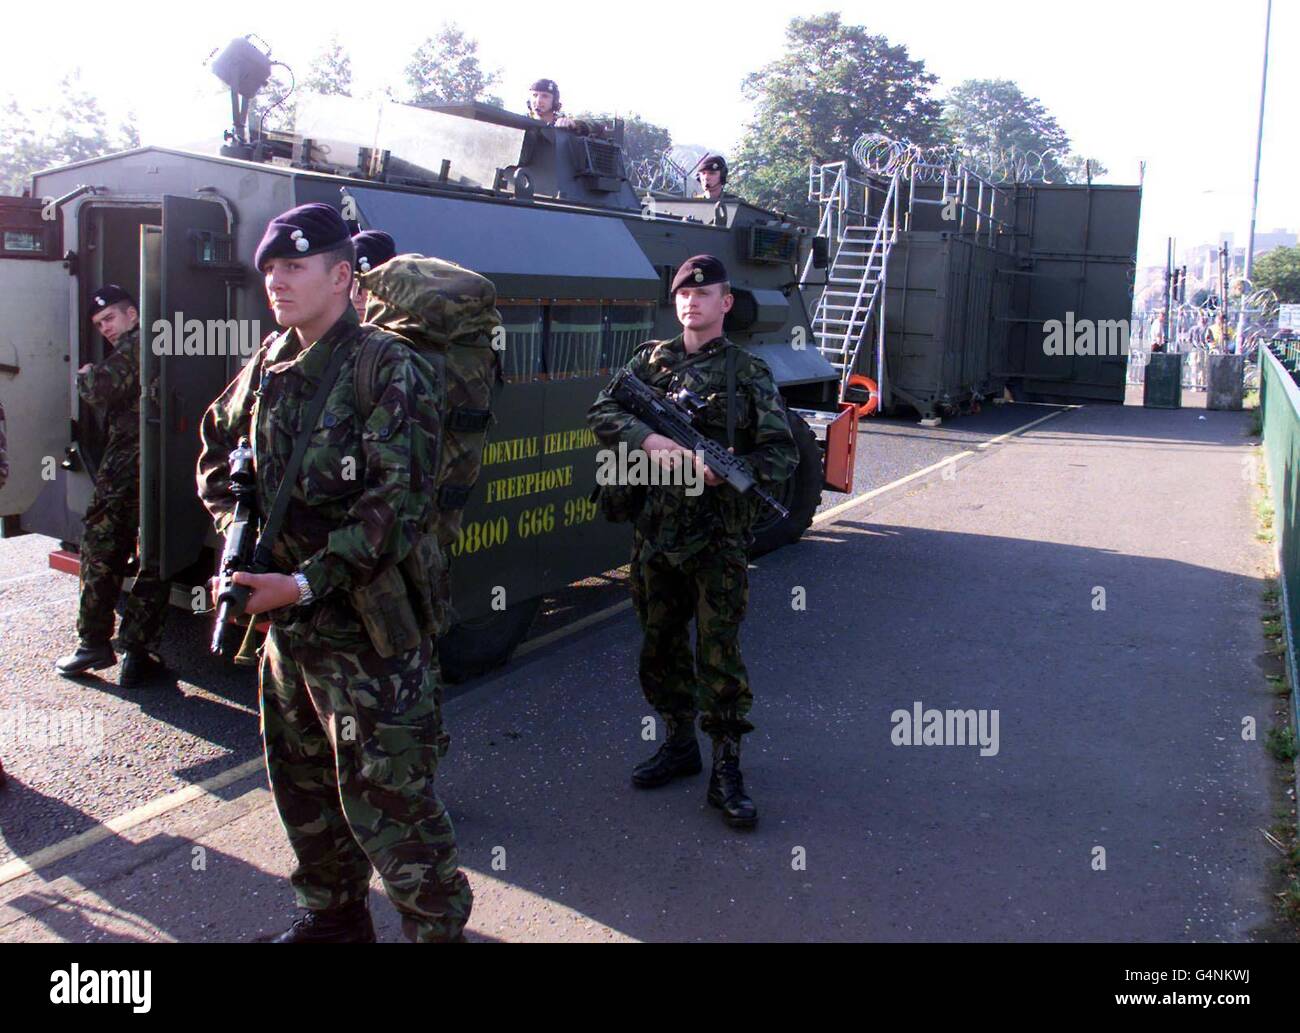 Britische Soldaten der Royal Welch Fusiliers besiegeln die untere Ormeau Road in Belfast. Dies ist die Szene, die Mitglieder von Ballynafeigh Orangemen begrüßen wird. Die Route wurde von der Paraden-Kommission verboten, in das untere nationalistische Gebiet der Ormeau Road zu gelangen. Stockfoto